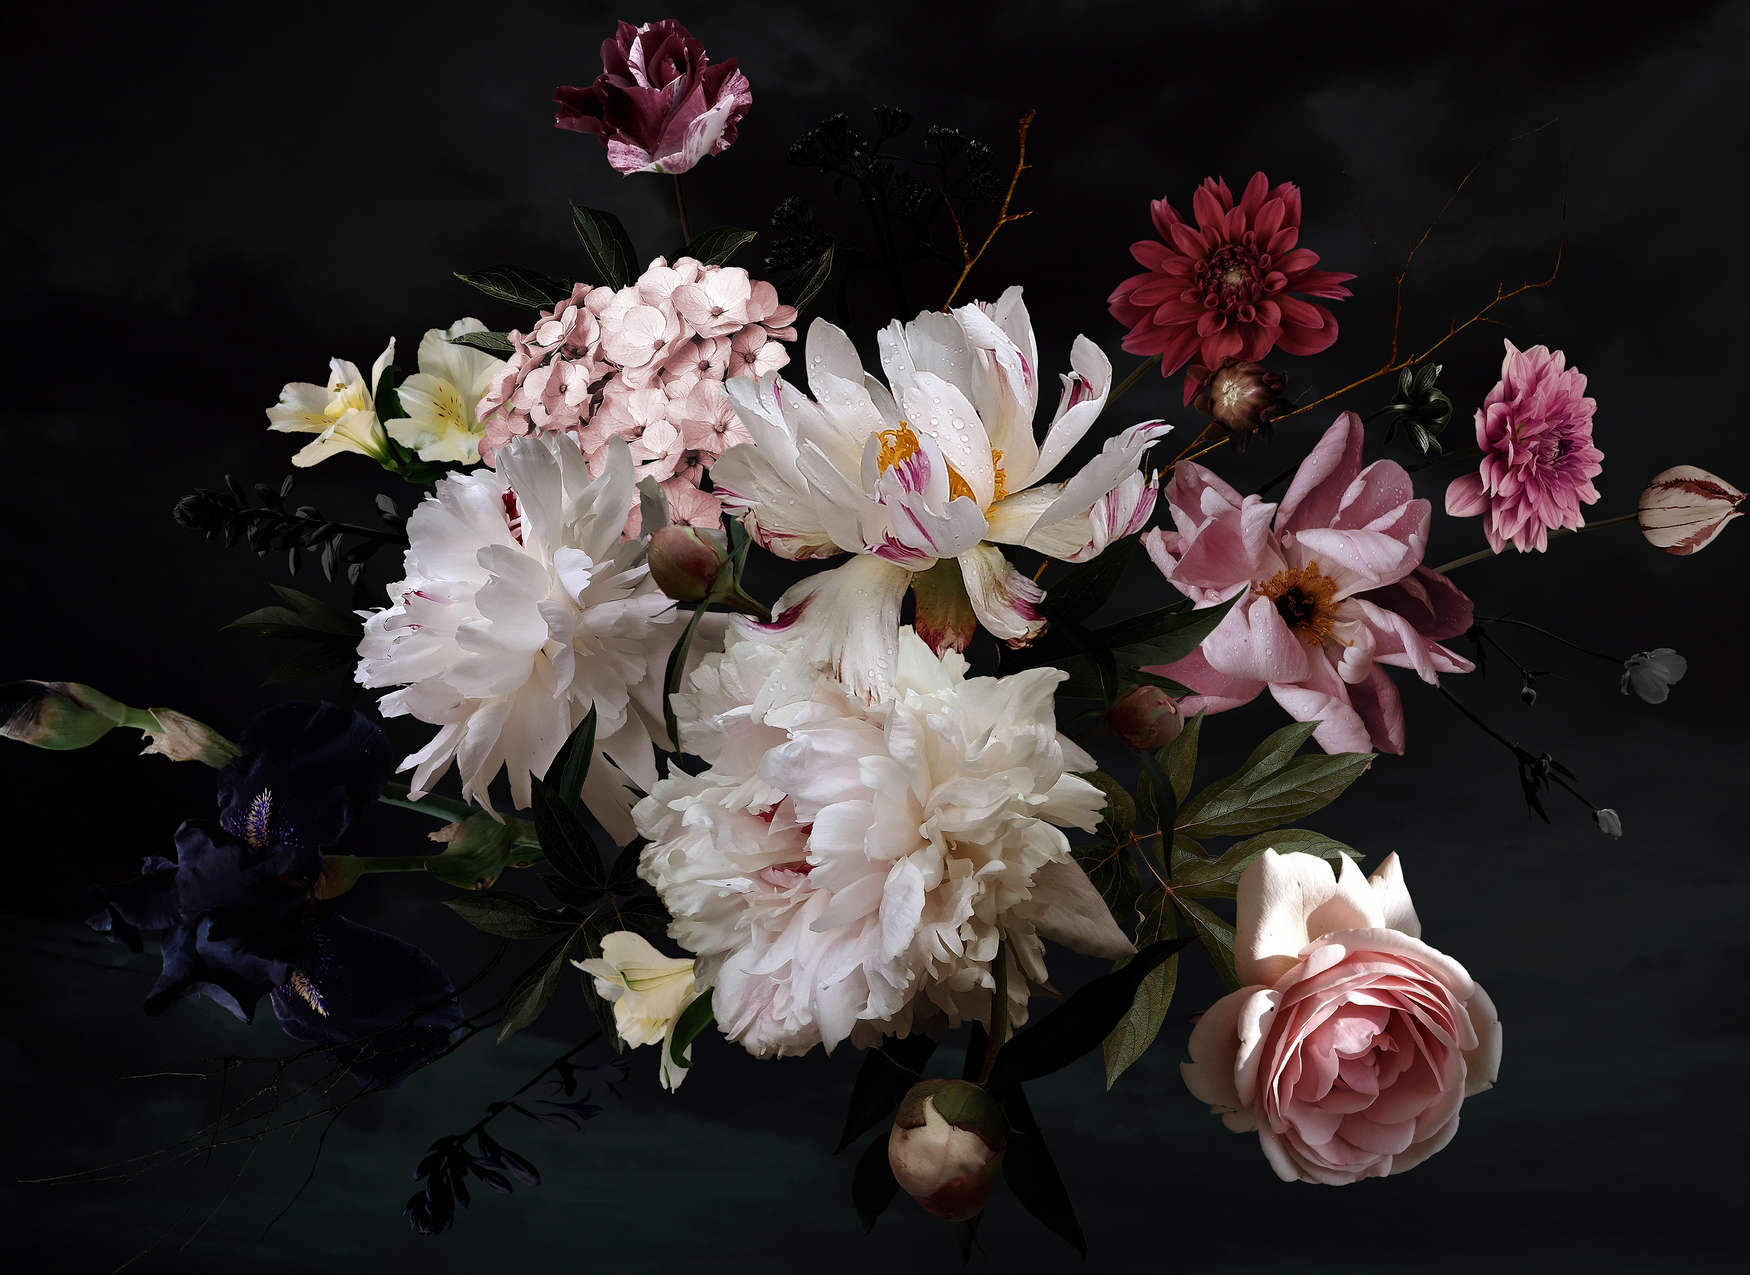             Fototapete Blumenstrauß – Weiß, Rosa, Schwarz
        